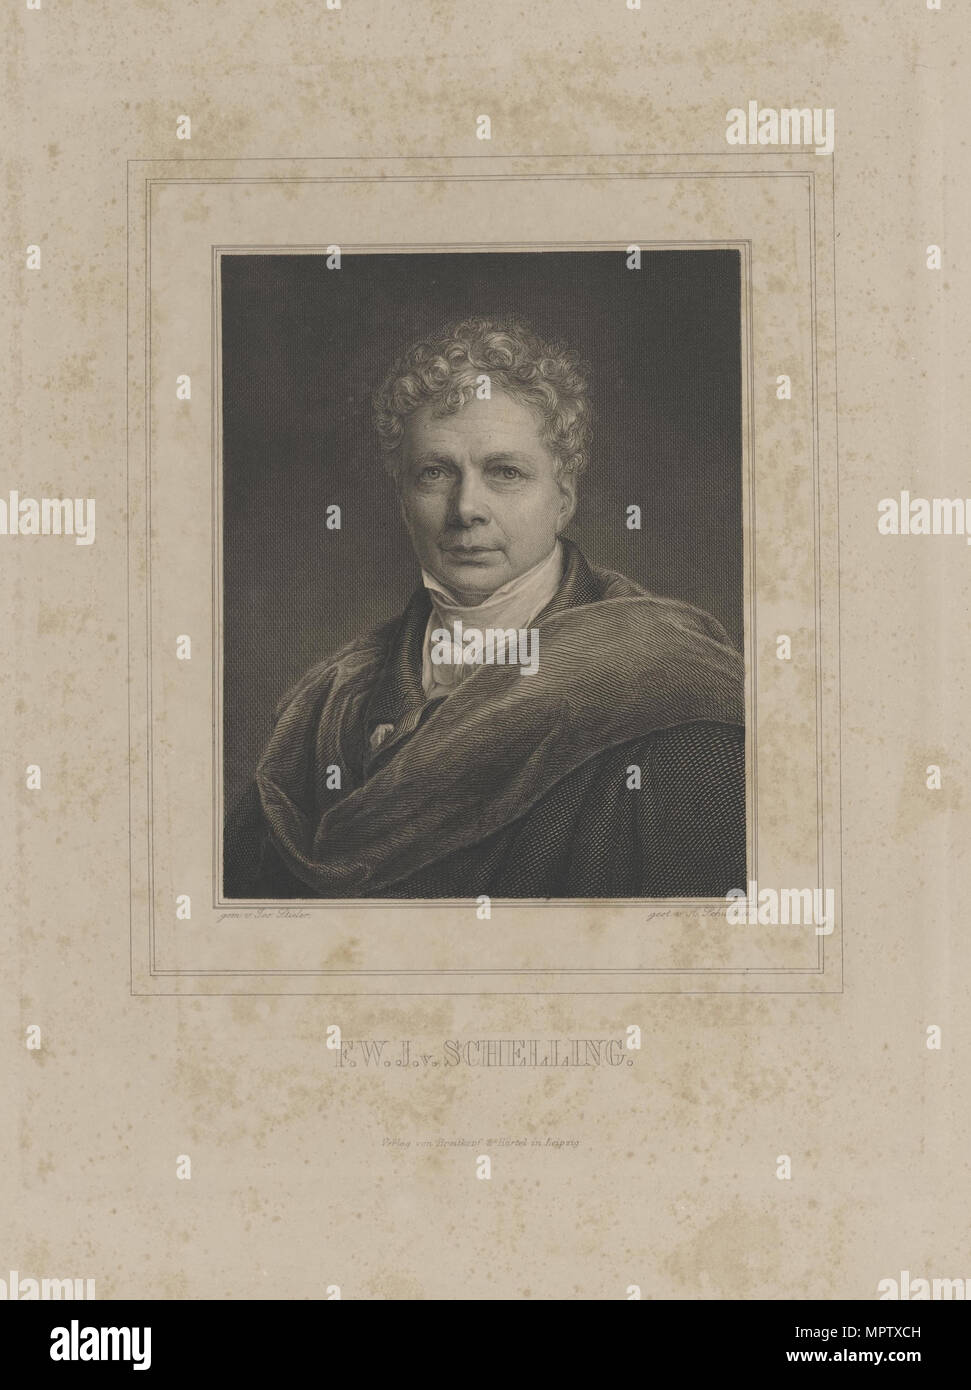 Portrait of Friedrich Wilhelm Schelling (1775-1854). Stock Photo